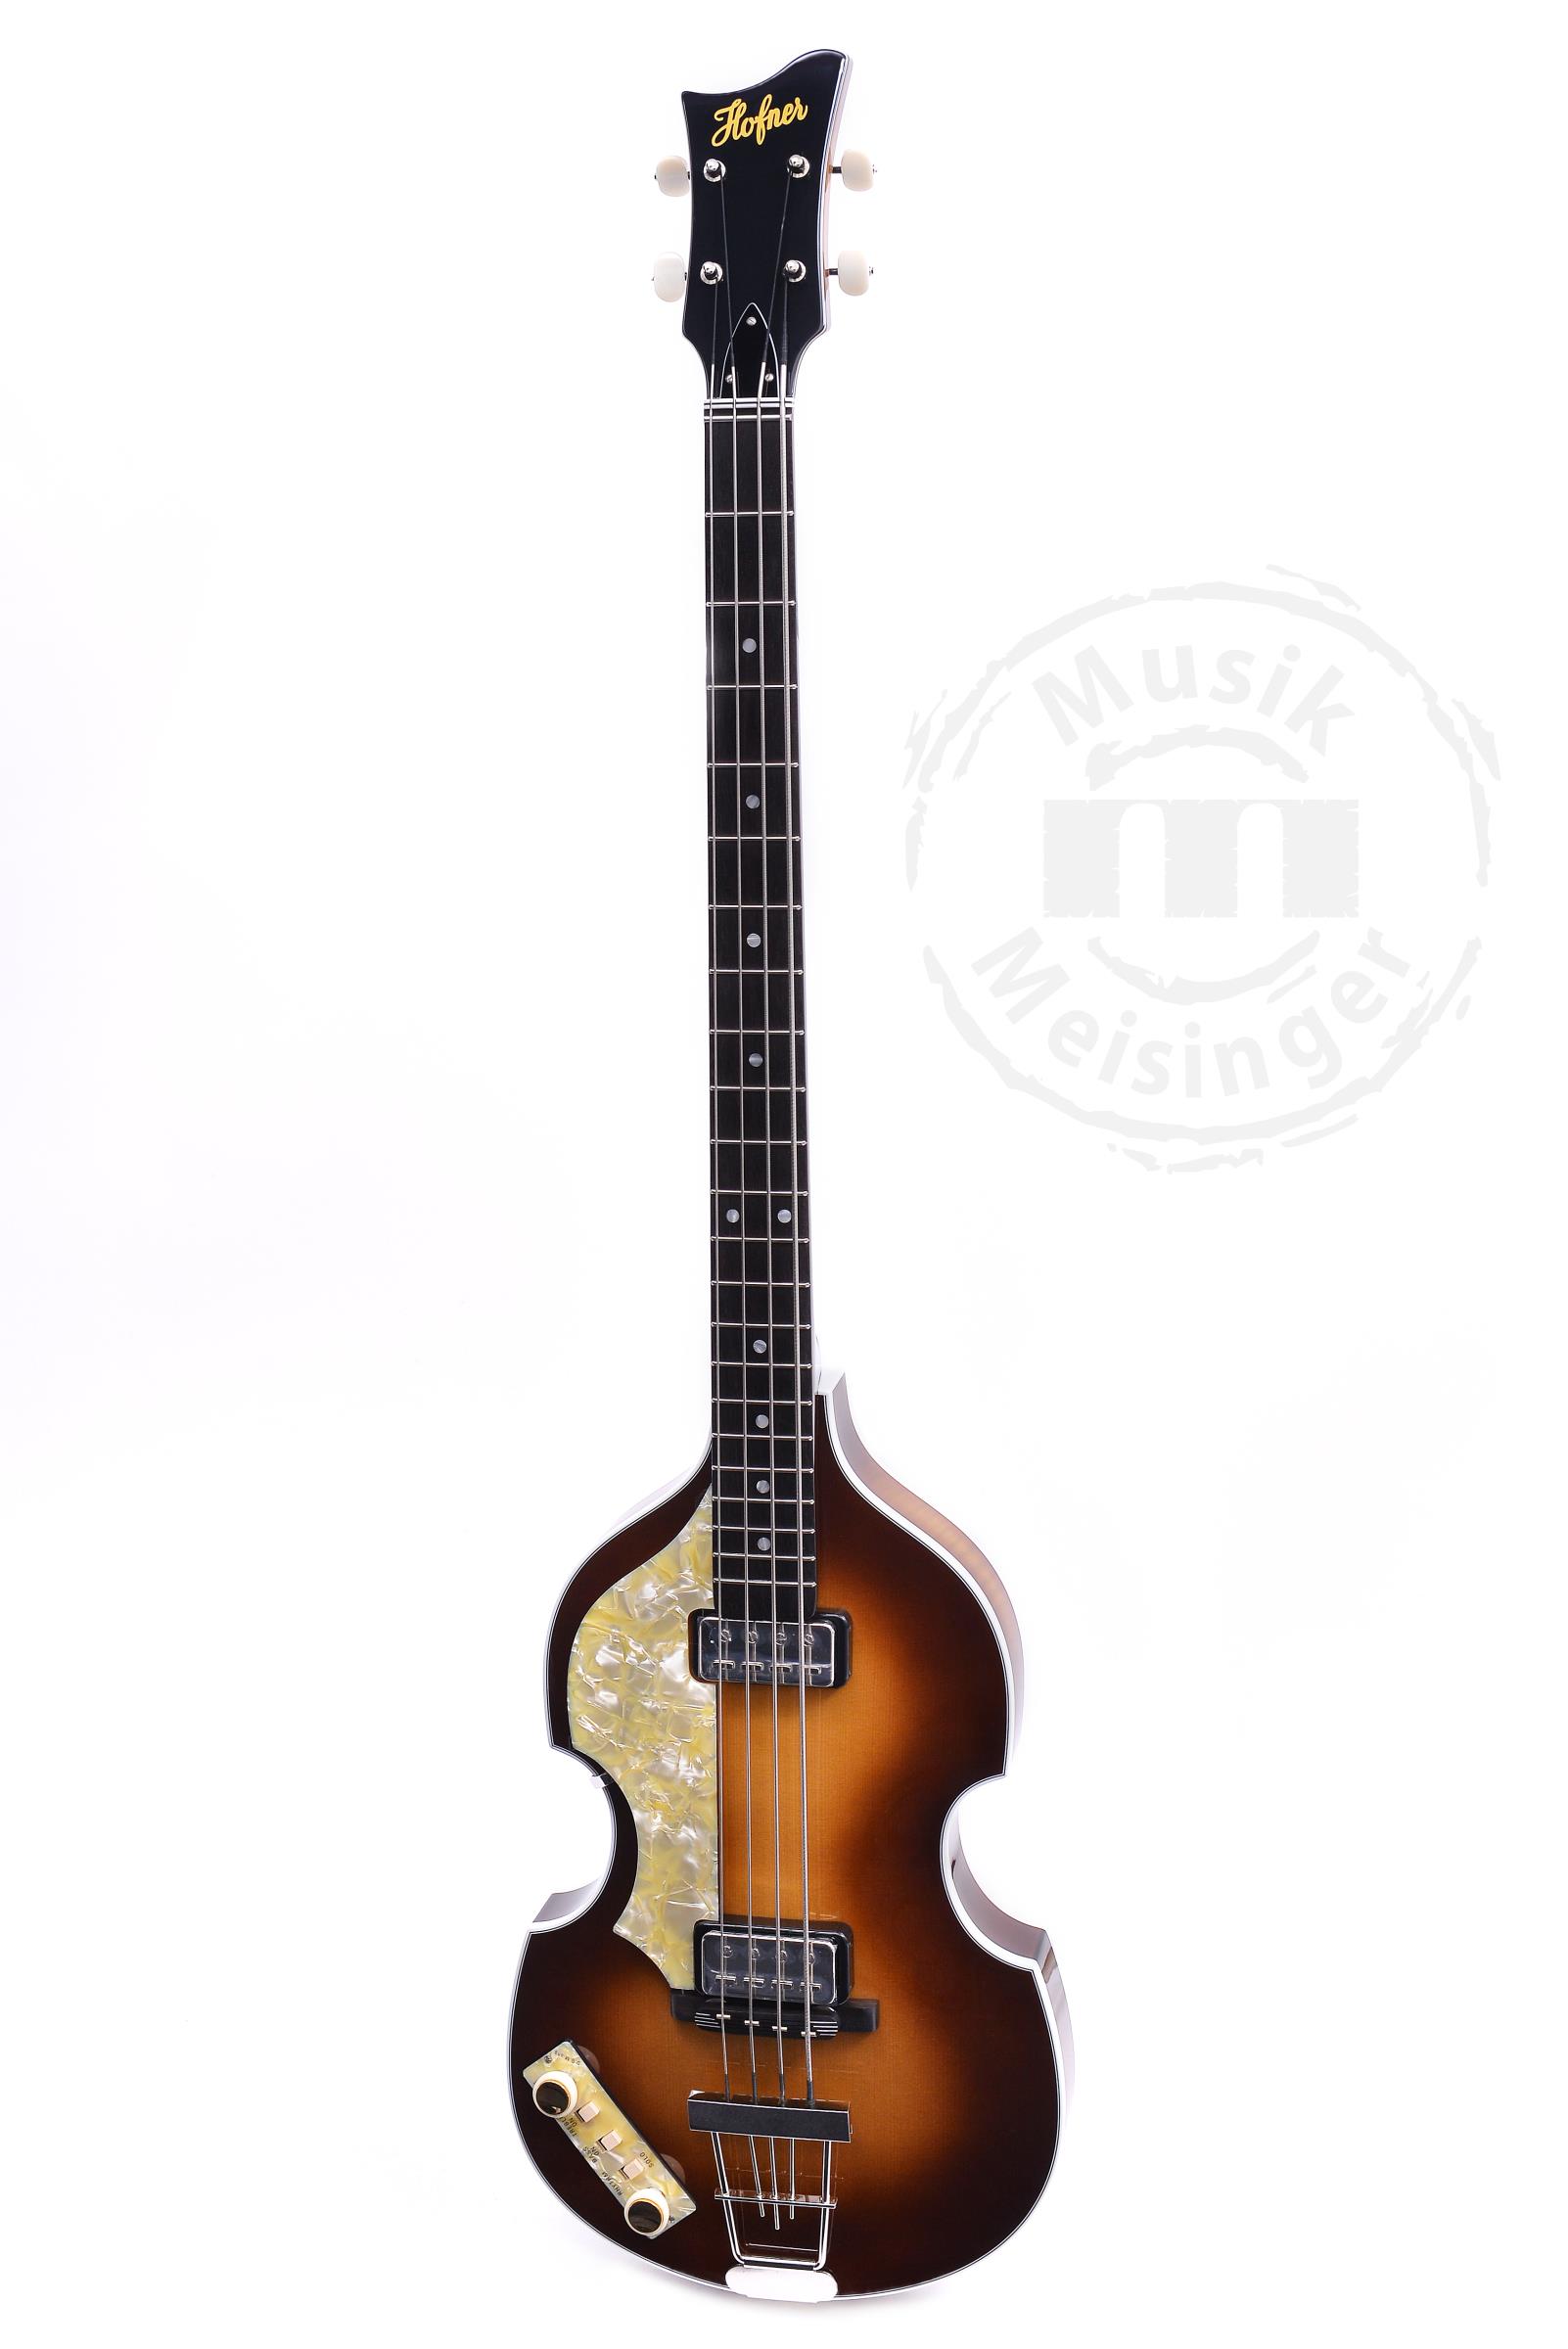 HÖFNER 63 Violin Bass 60th Anniversary Limited Edition Left